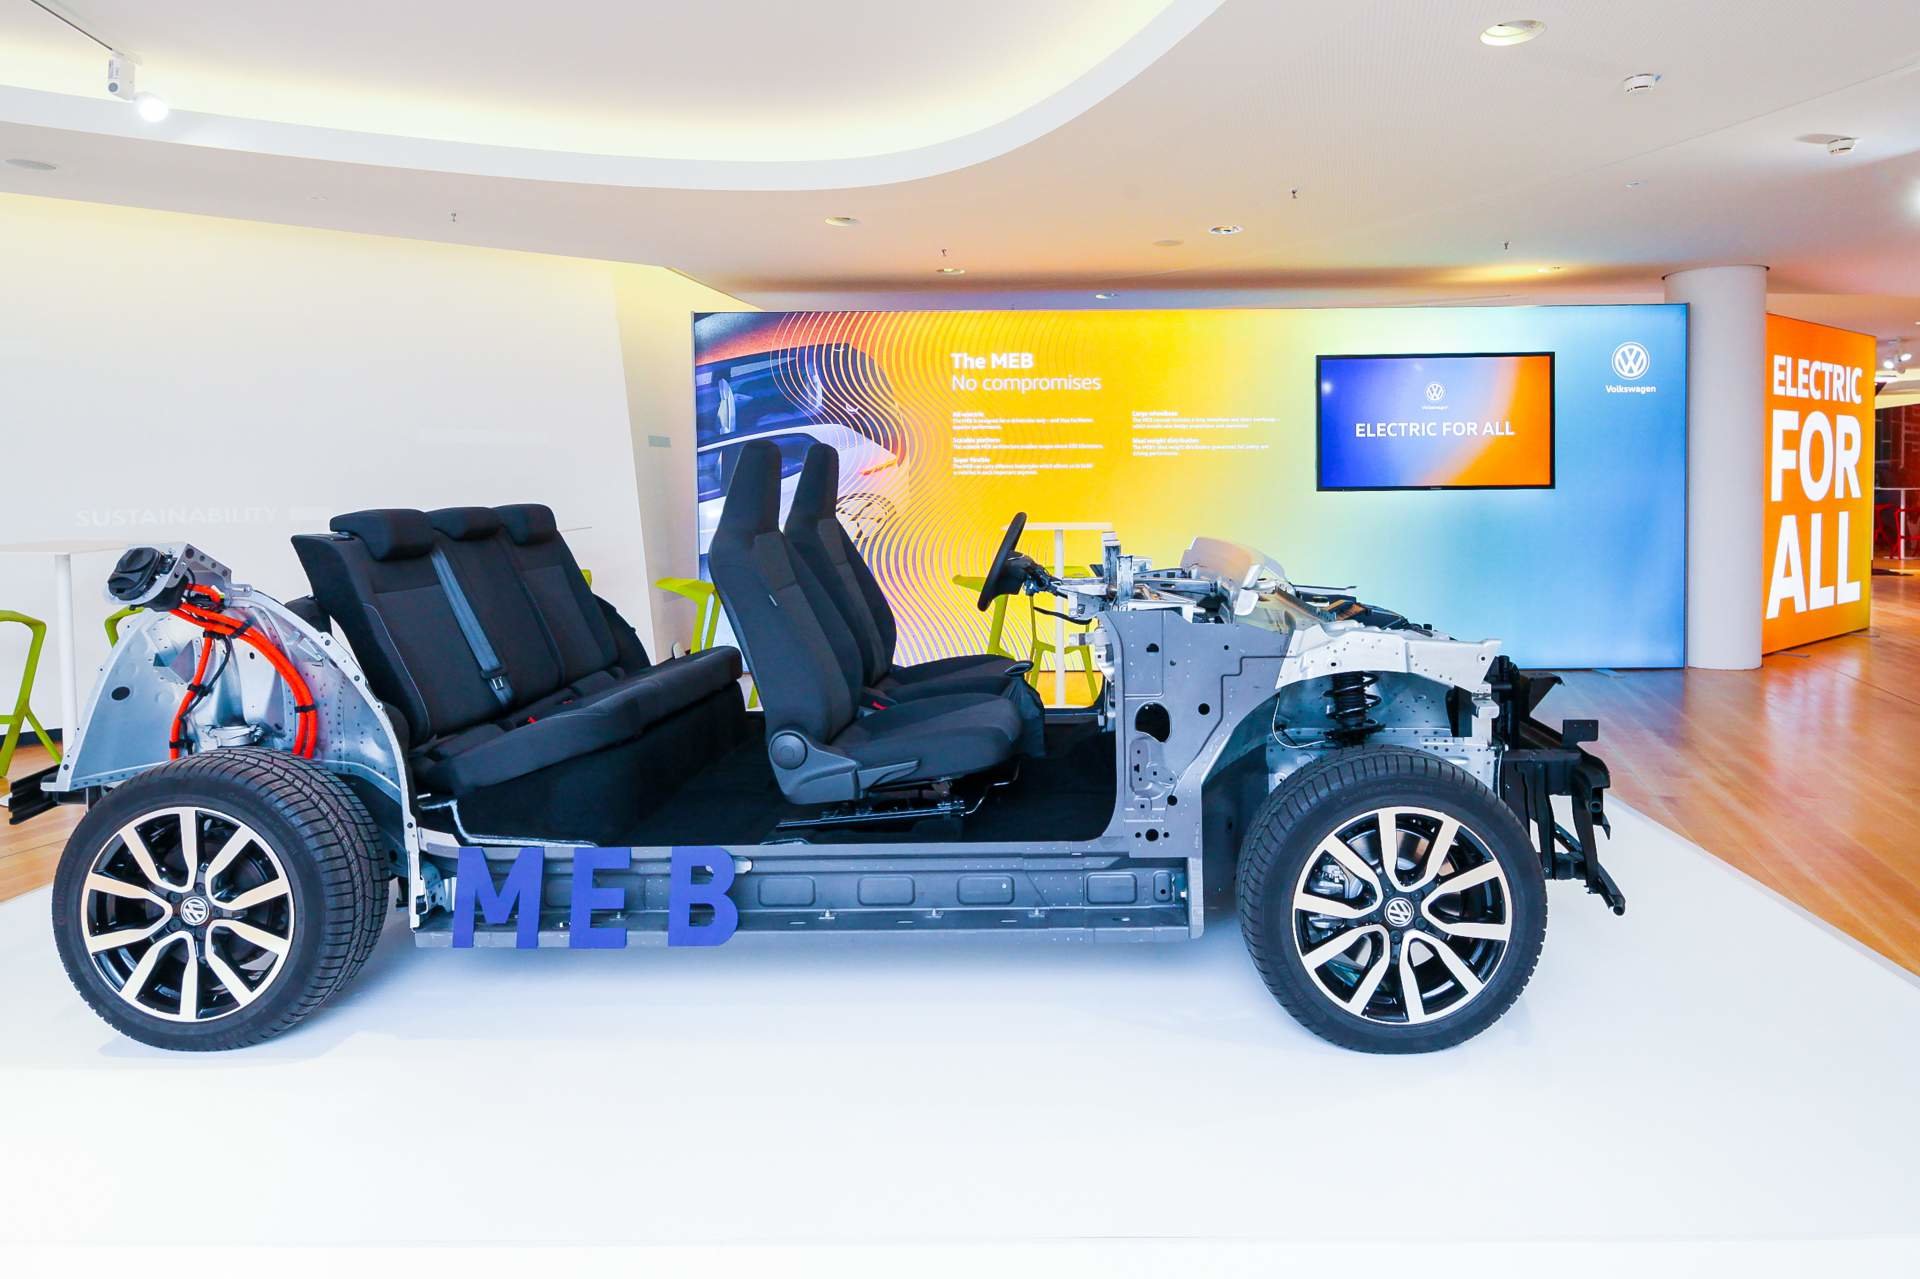 Světová premiéra nově vyvinuté modulární platformy pro elektromobily (MEB) v Drážďanech: klíč k „elektromobilu pro všechny“